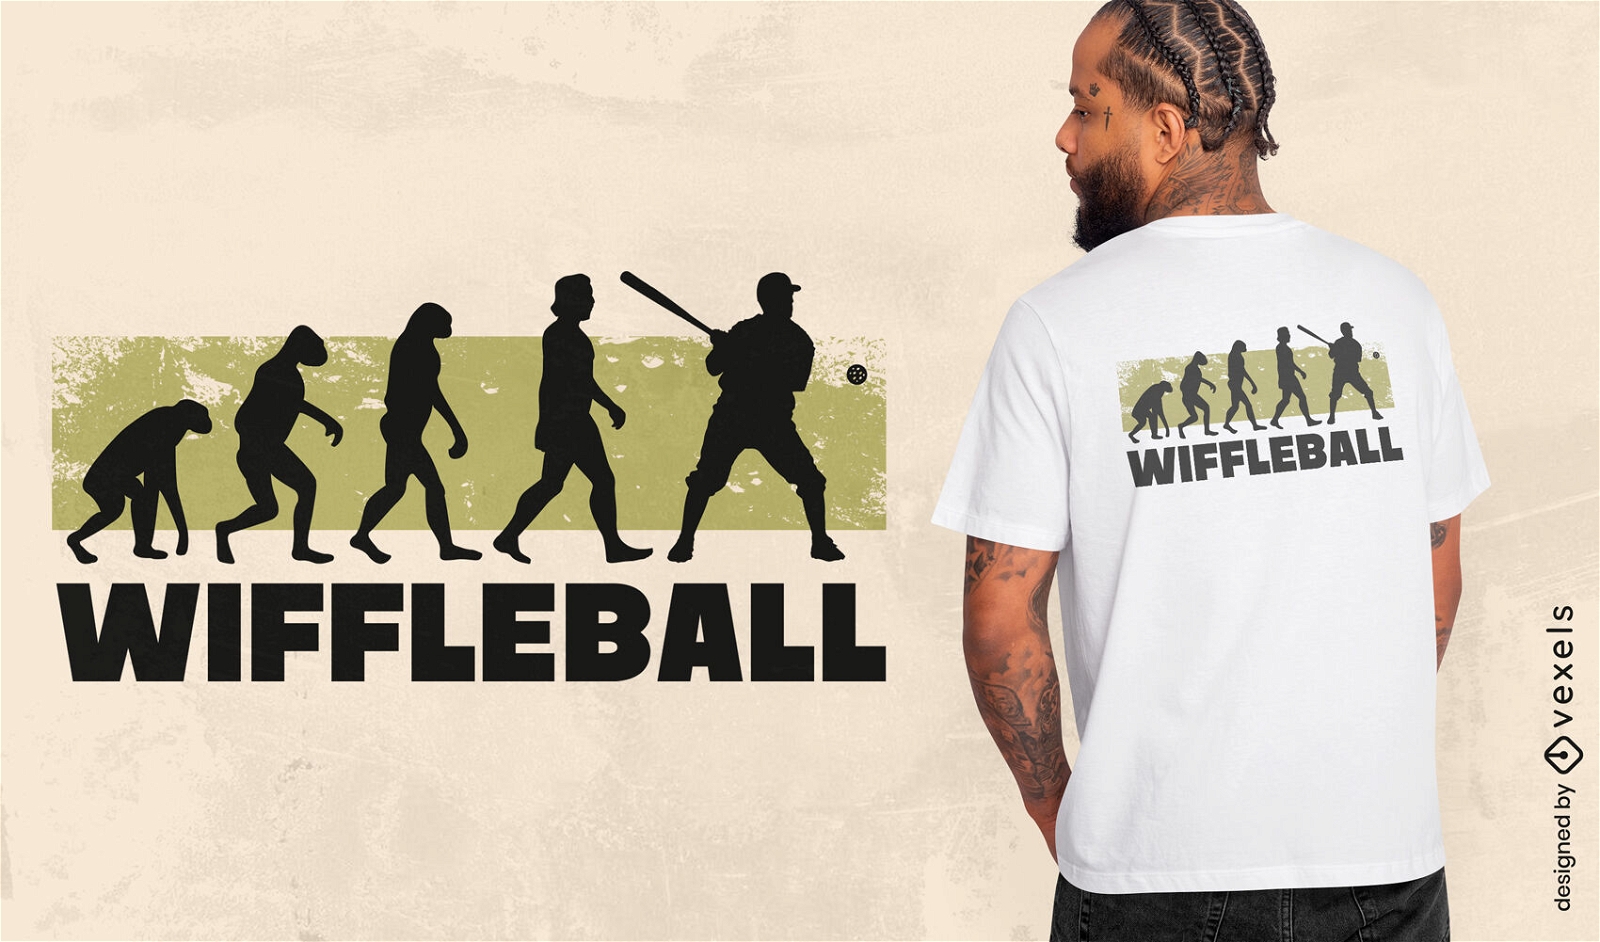 Wiffleball t-shirt design